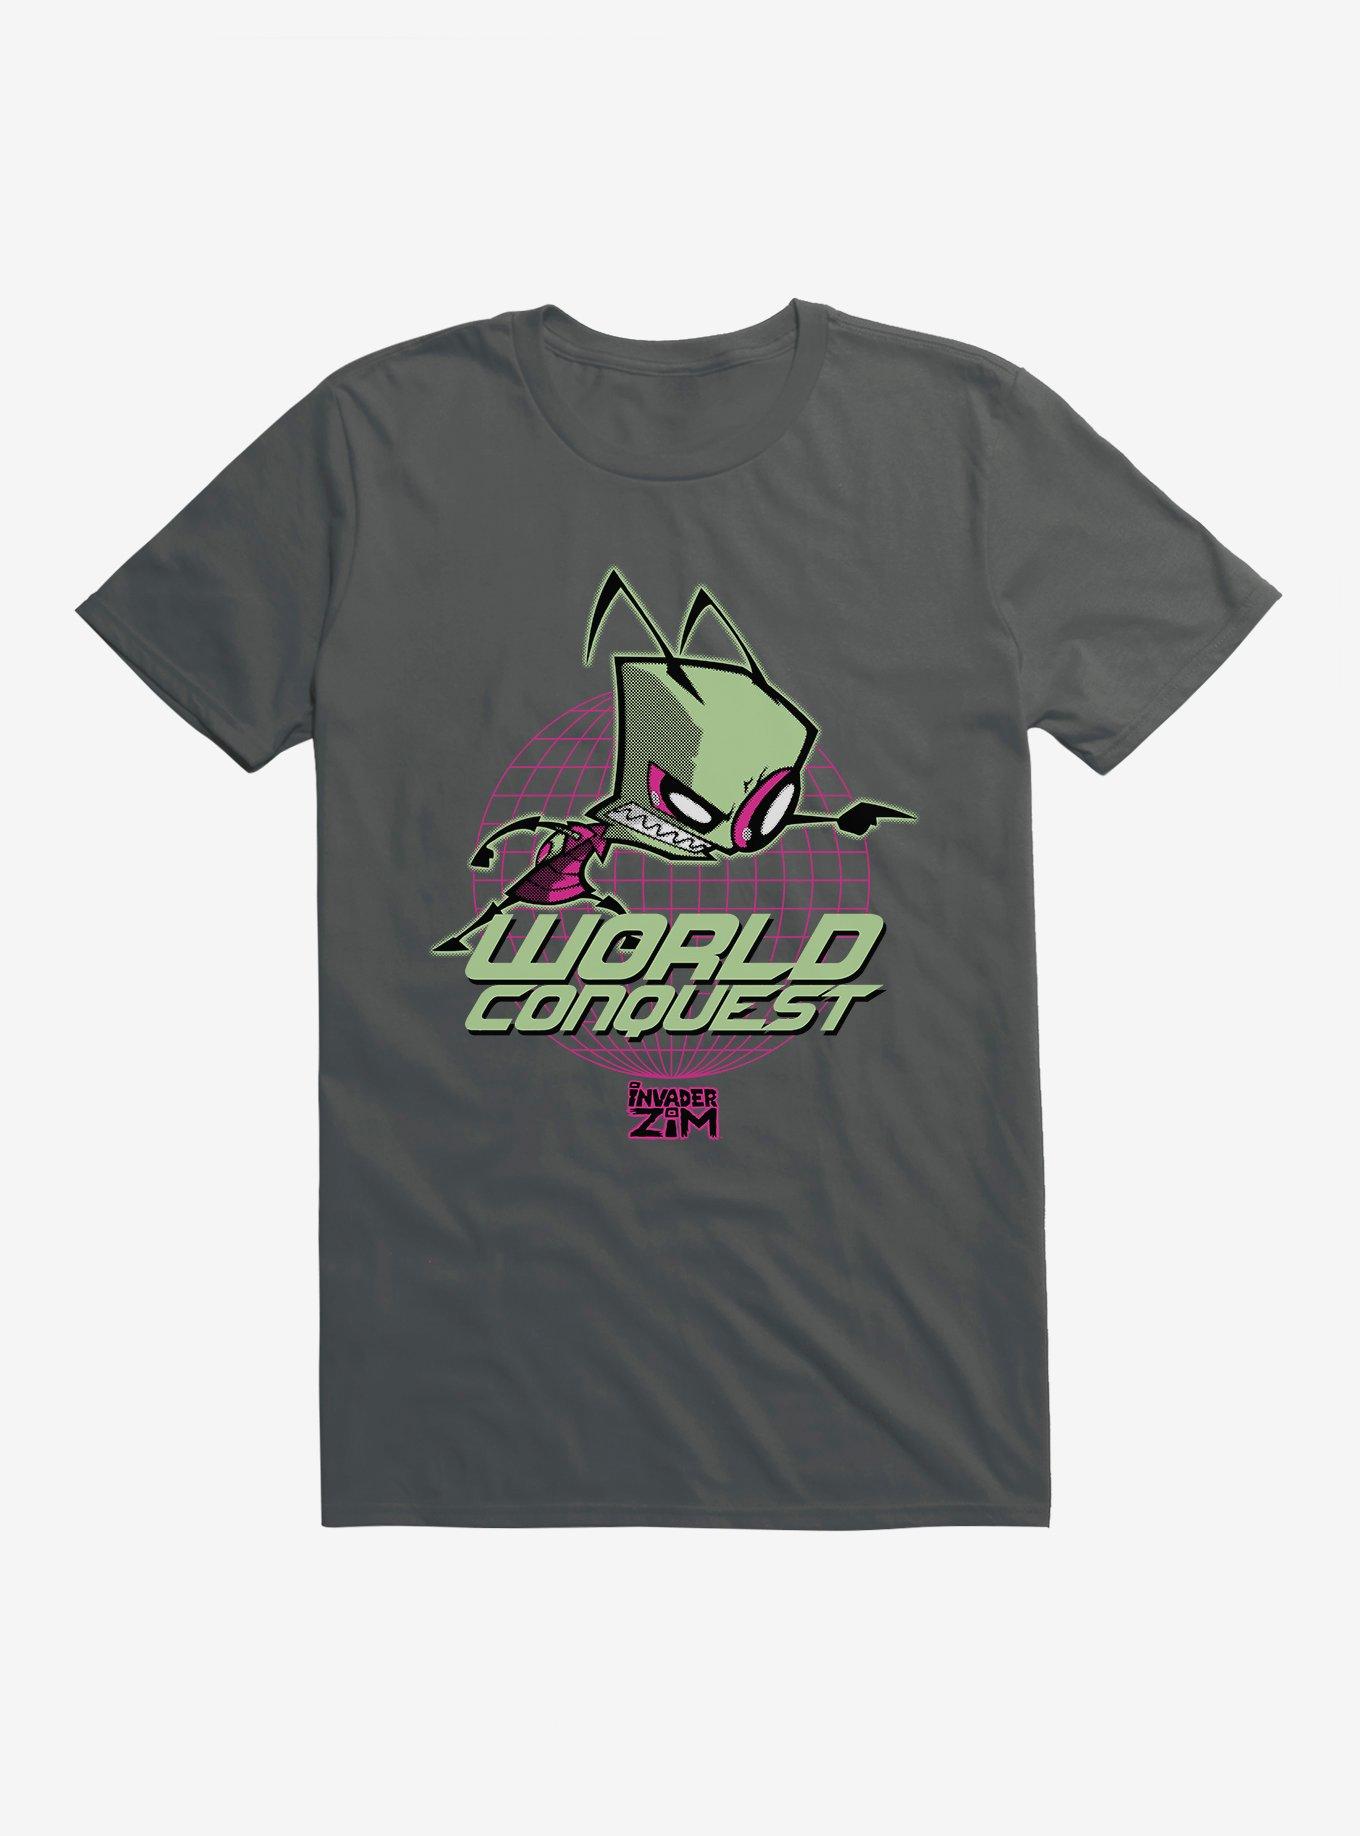 Invader Zim Gir World Conquest T-Shirt